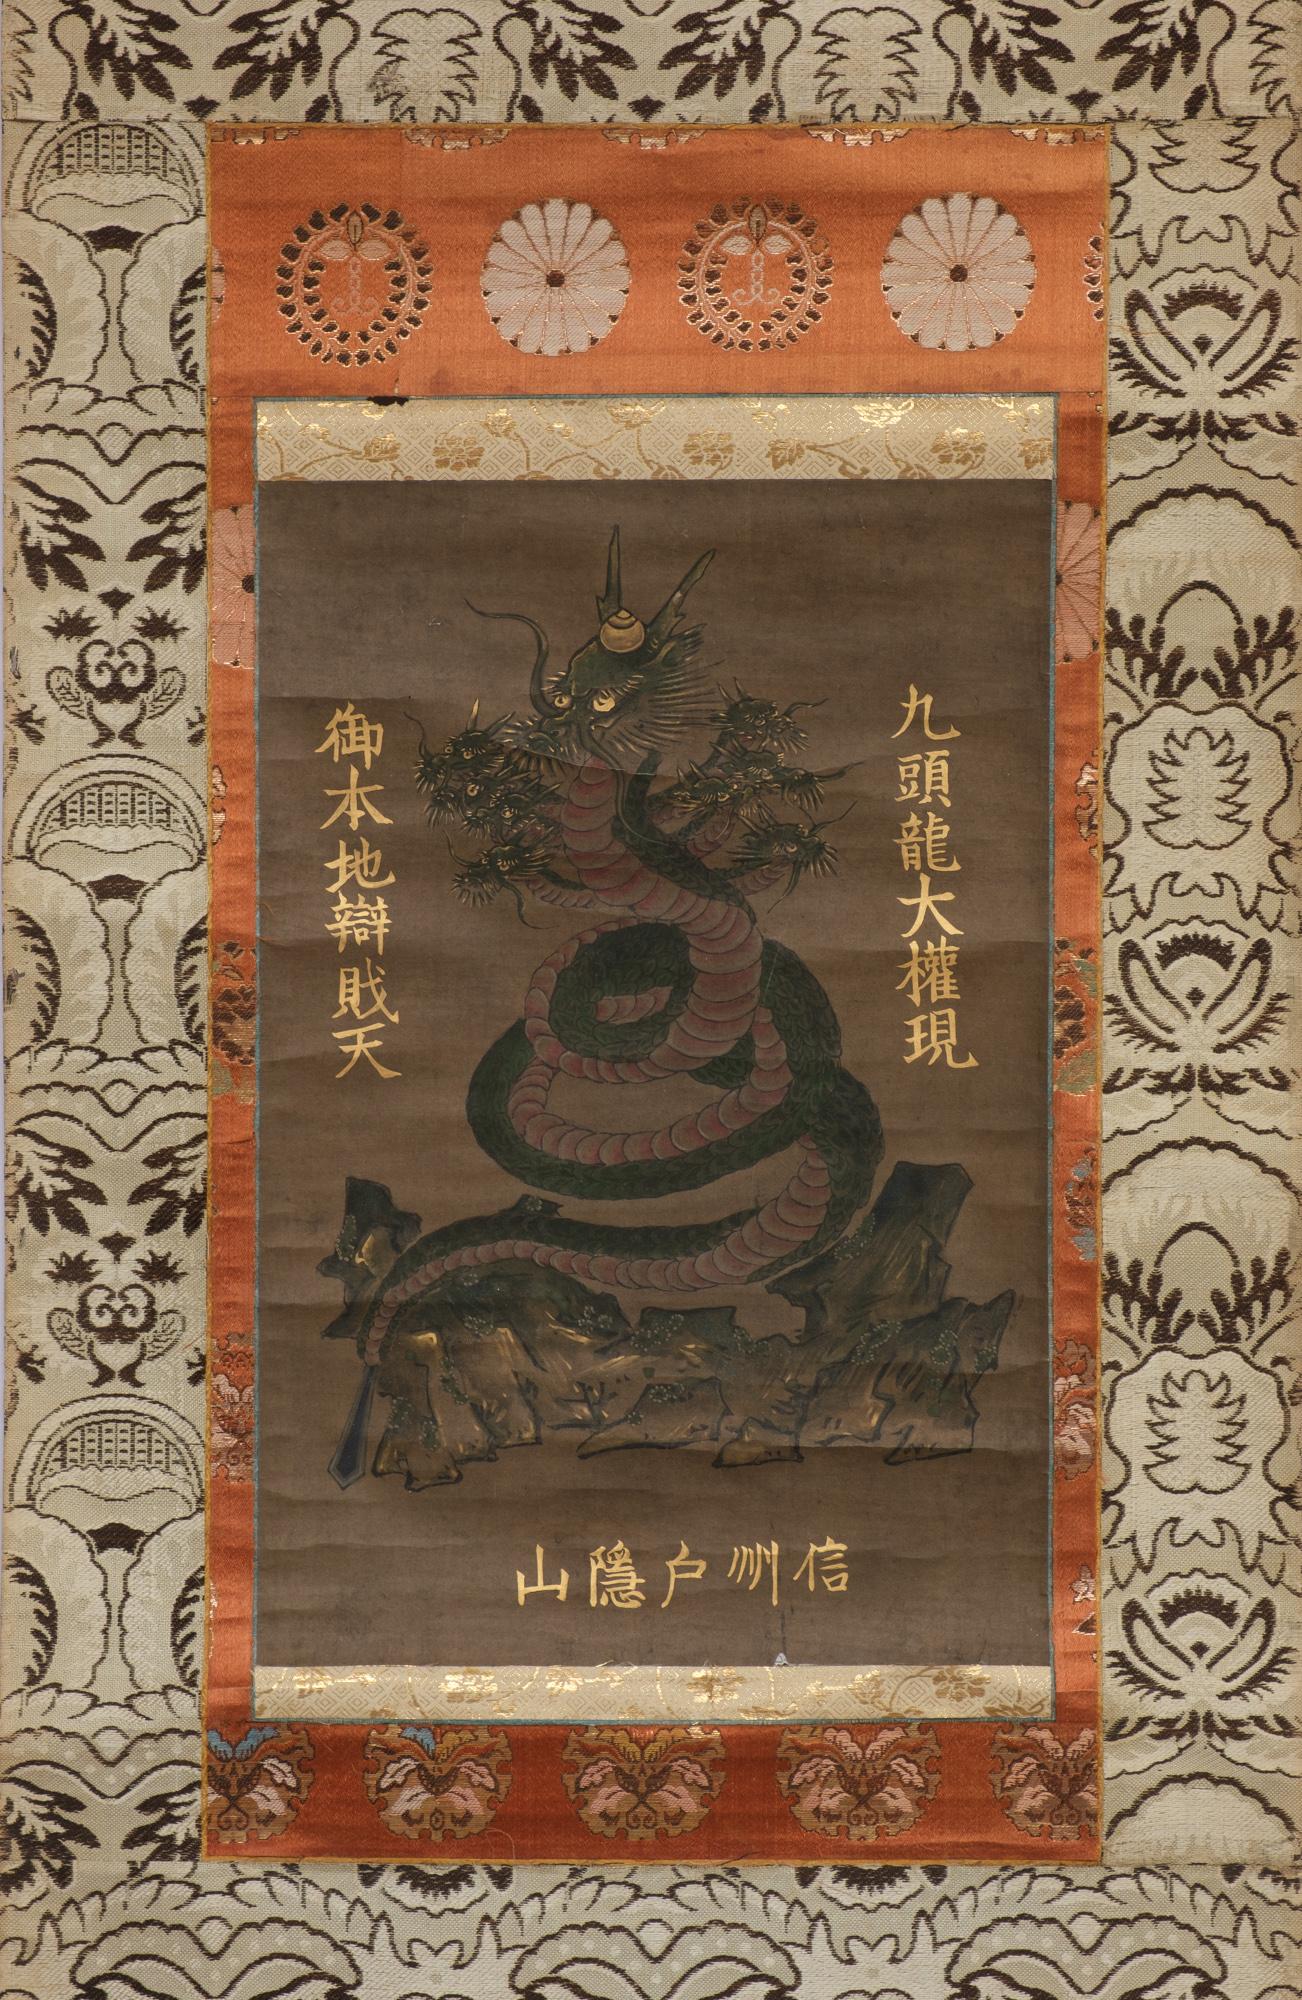 Erstaunliches 260 Jahre altes japanisches Kakejiku (hängende Schriftrolle) mit einer raffinierten Malerei der neunköpfigen Drachengottheit, mit einer buddhistischen Flamme als Krone und einem Schwert als Schwanzspitze.

Es stellt die große